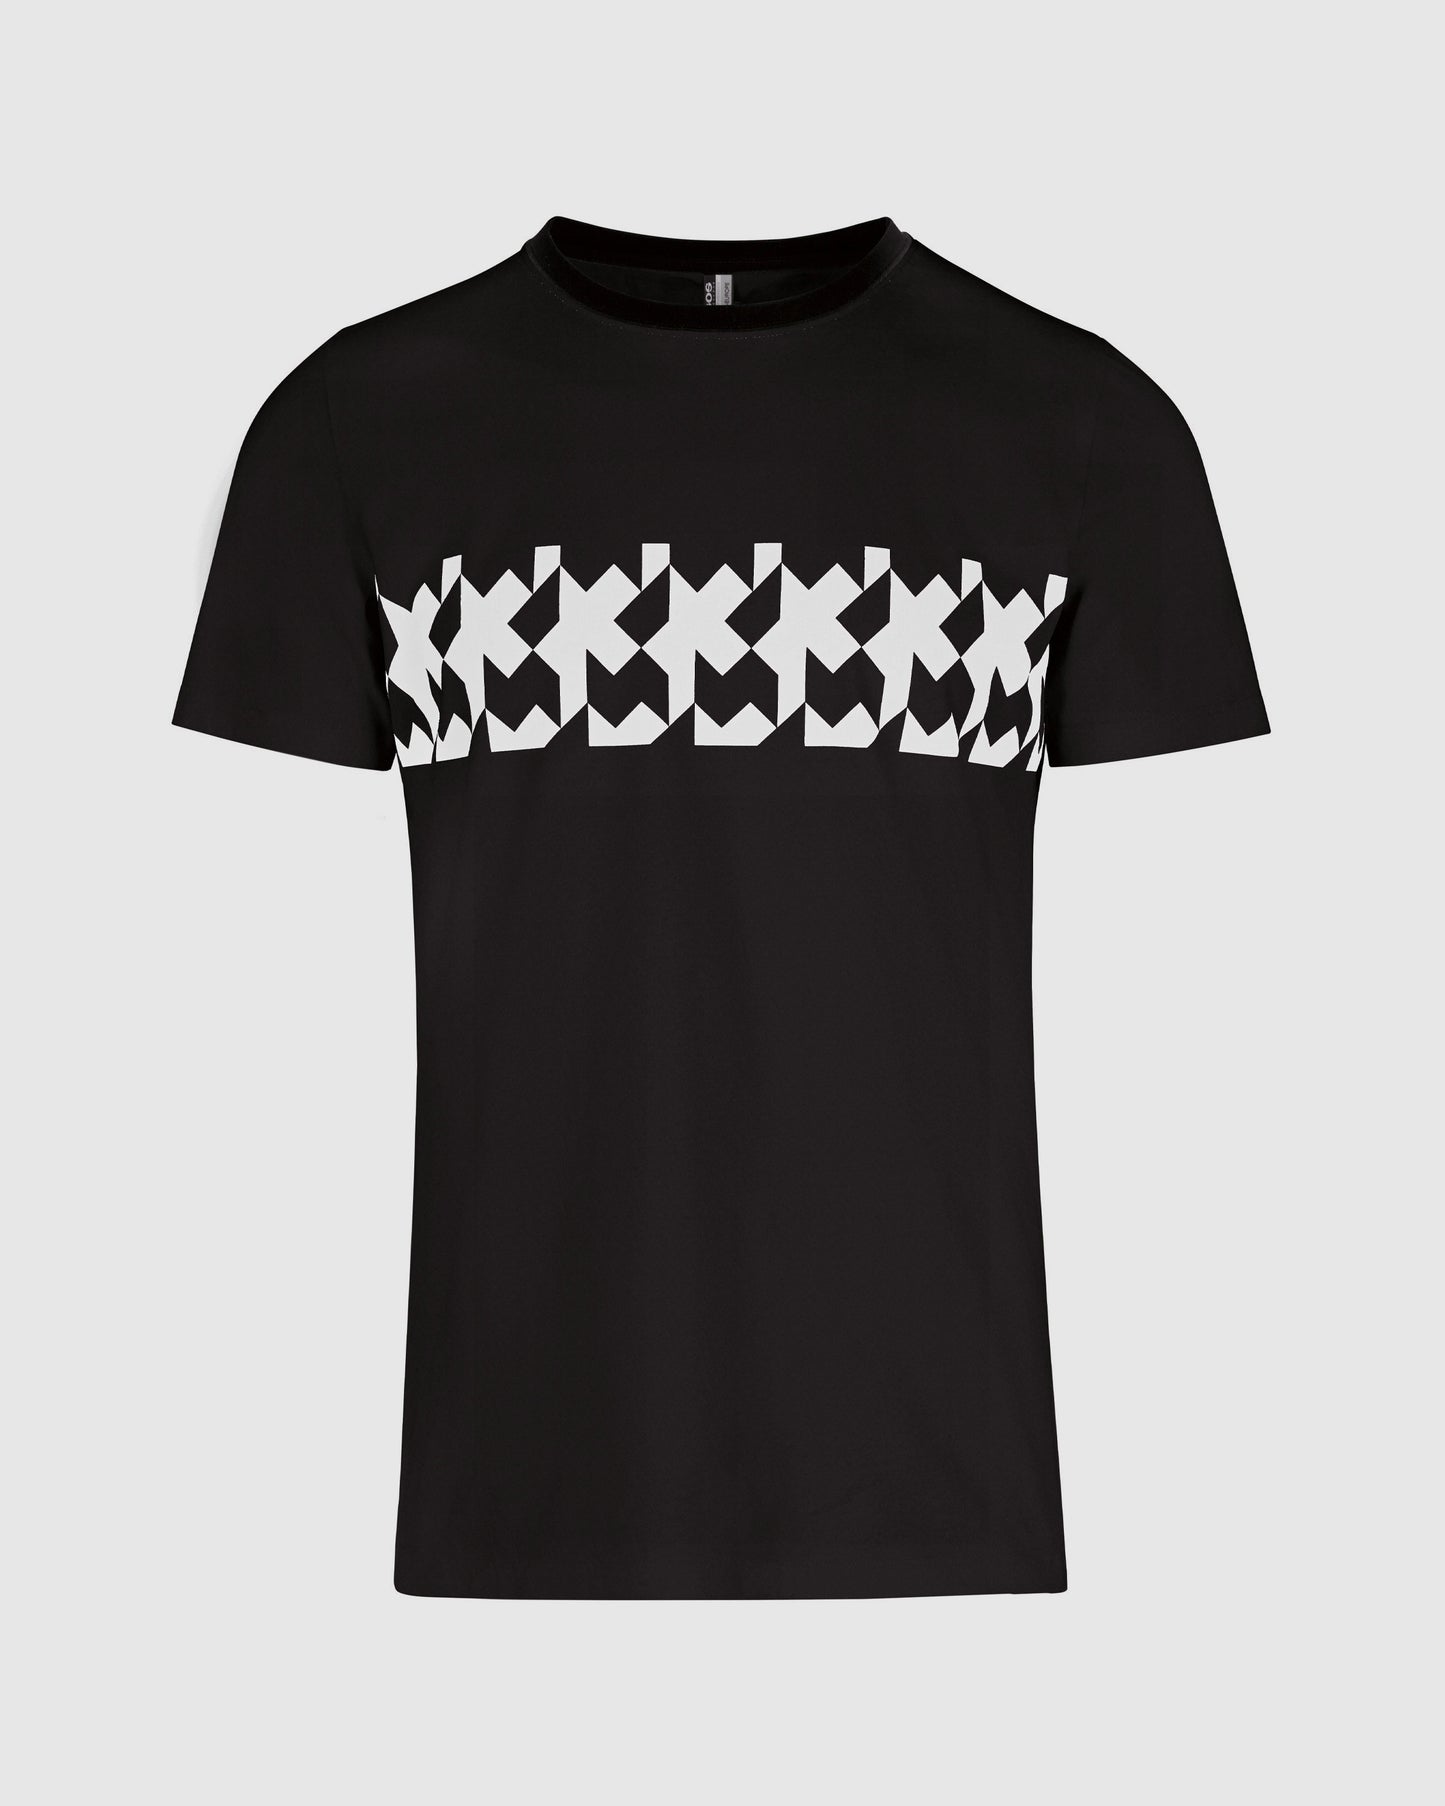 Assos Summer T-Shirt RS Griffe Black Series - FINAL SALE